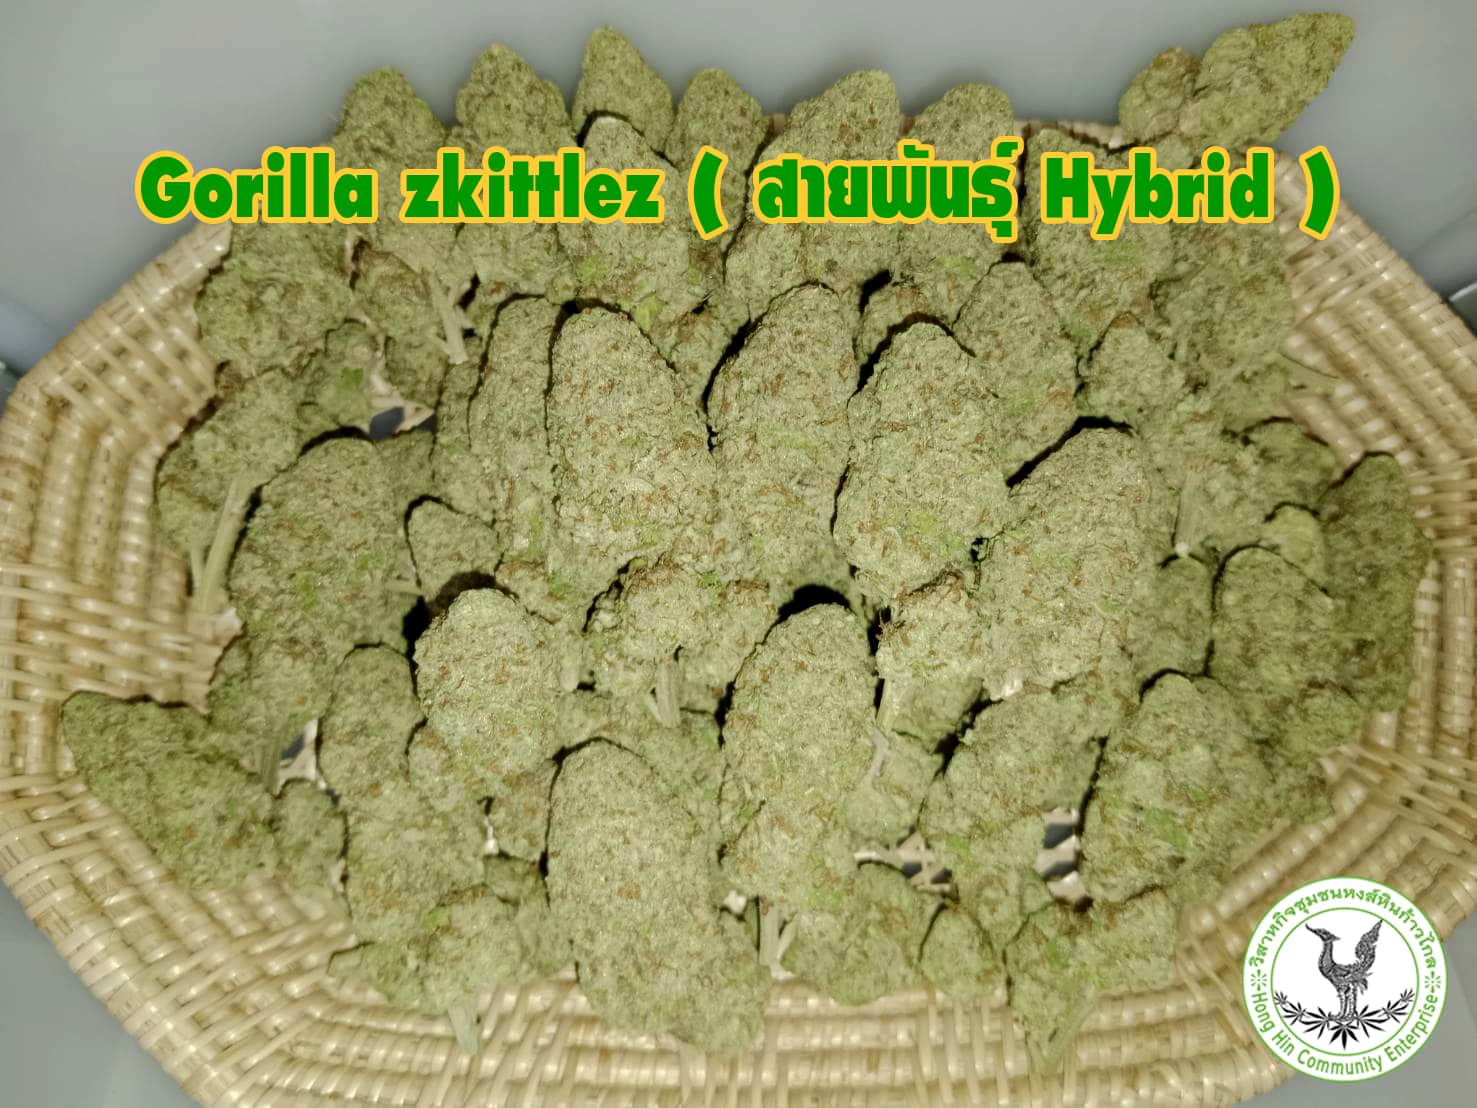 ดอกกัญชา Gorilla zkittlez (สายพันธุ์ Hybrid) ฟาร์มกัญชา ออร์แกนิค